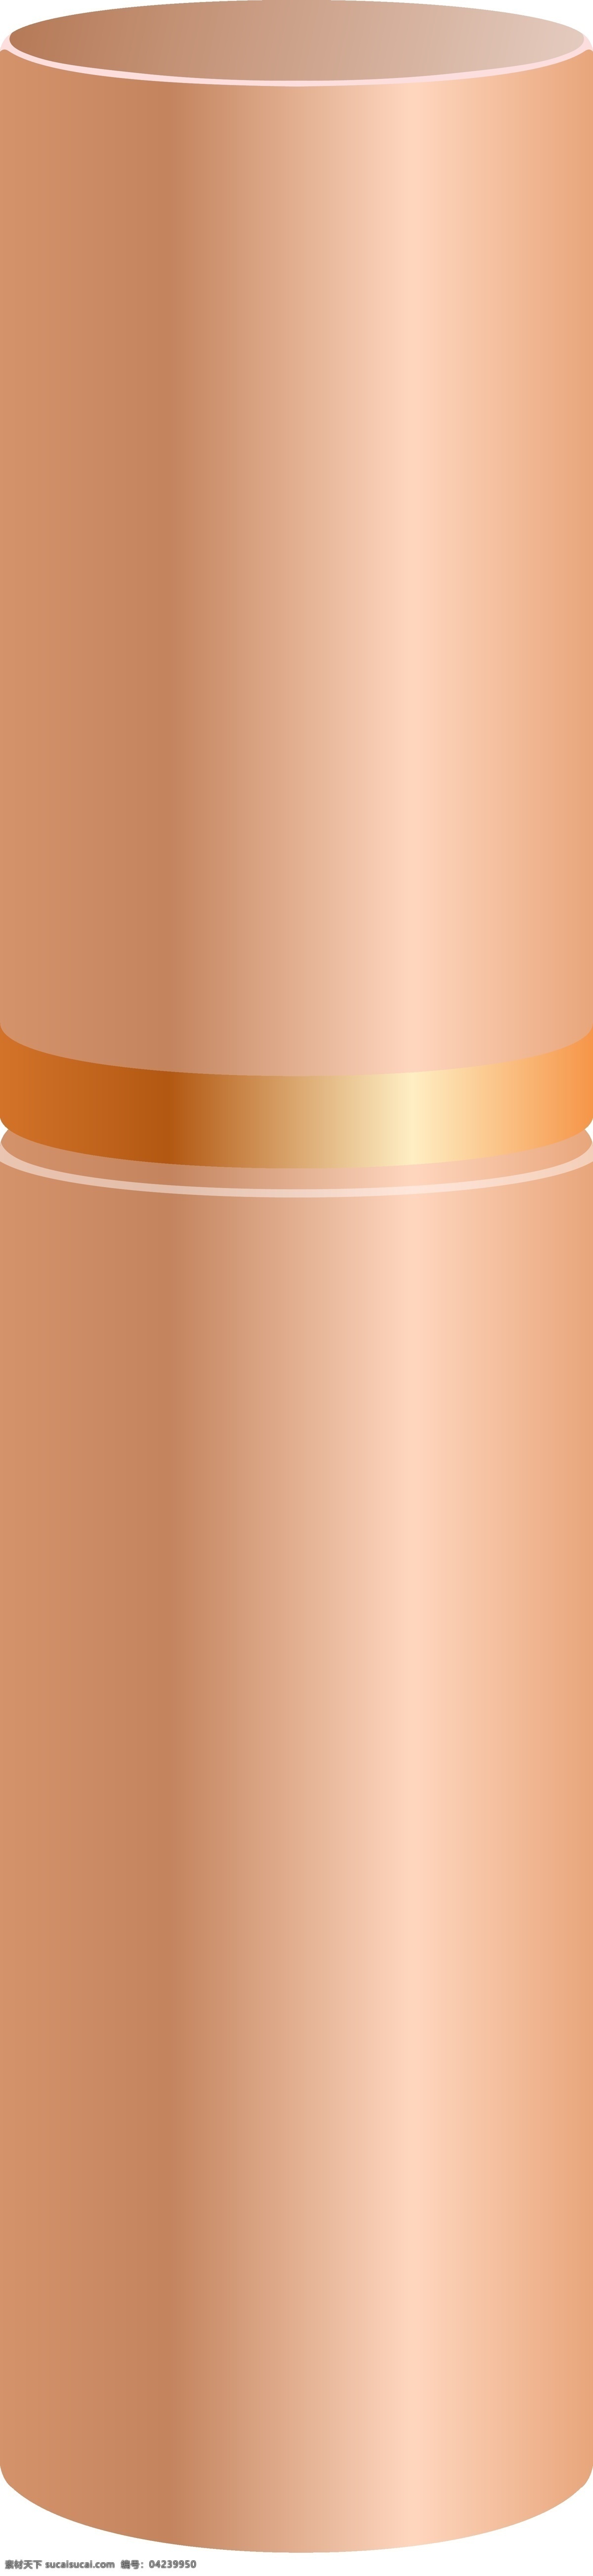 美容用品 粉 金色 瓶子 彩色 装饰 平面设计 原创 透明底 免抠 节日 海报装饰 清新 通用 美容 用品 粉金色 口红